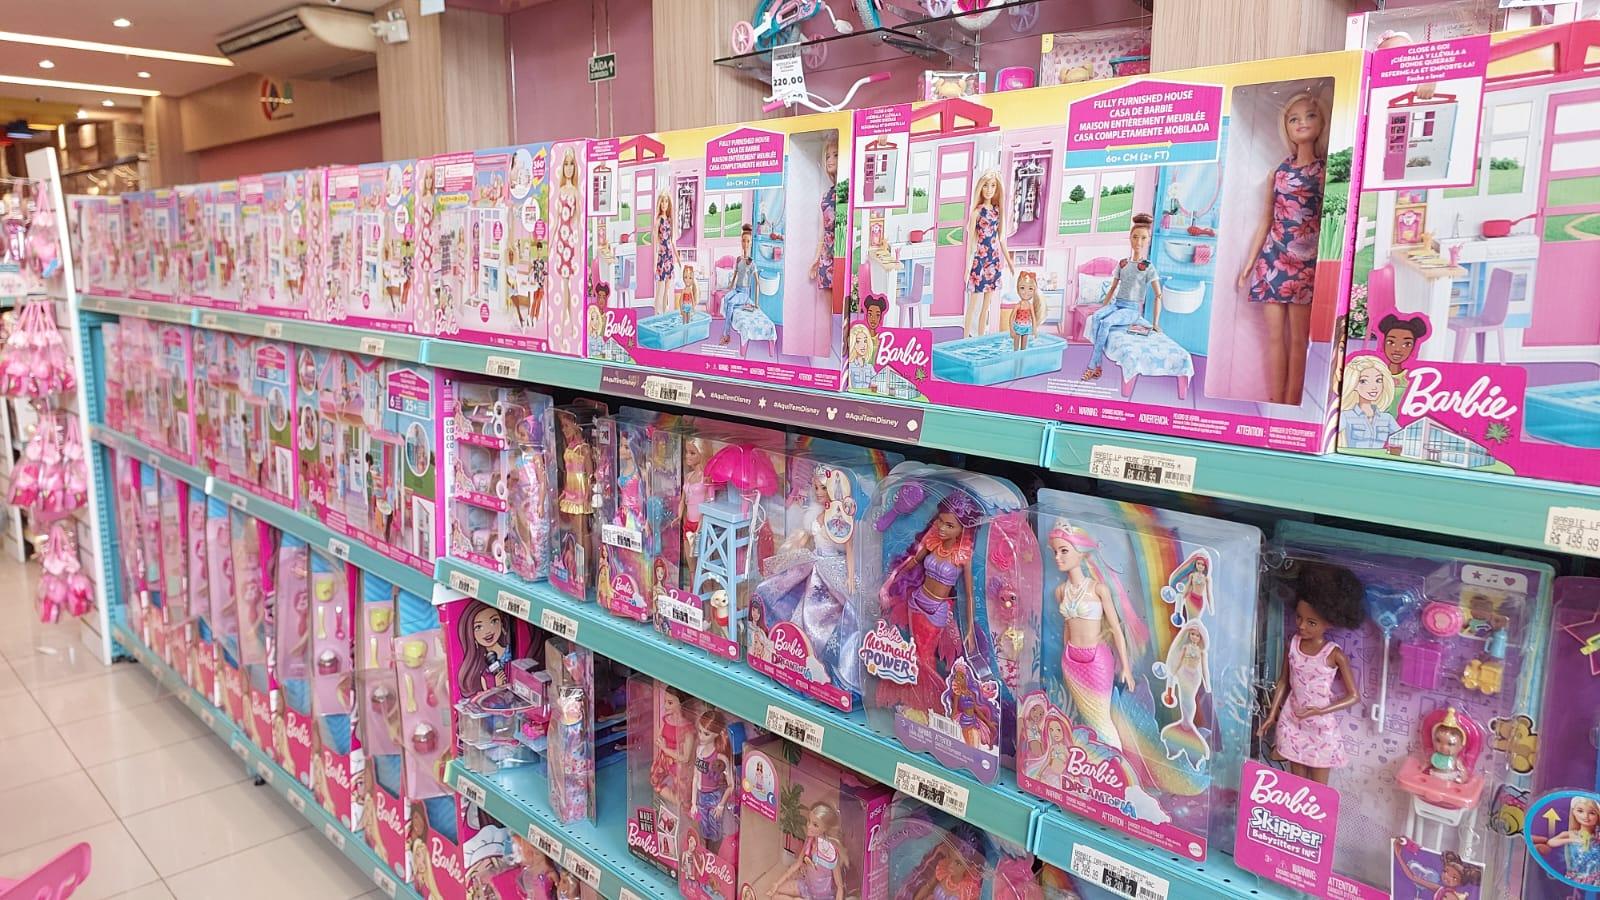 Quanto custaria a casa da Barbie se fosse de verdade?